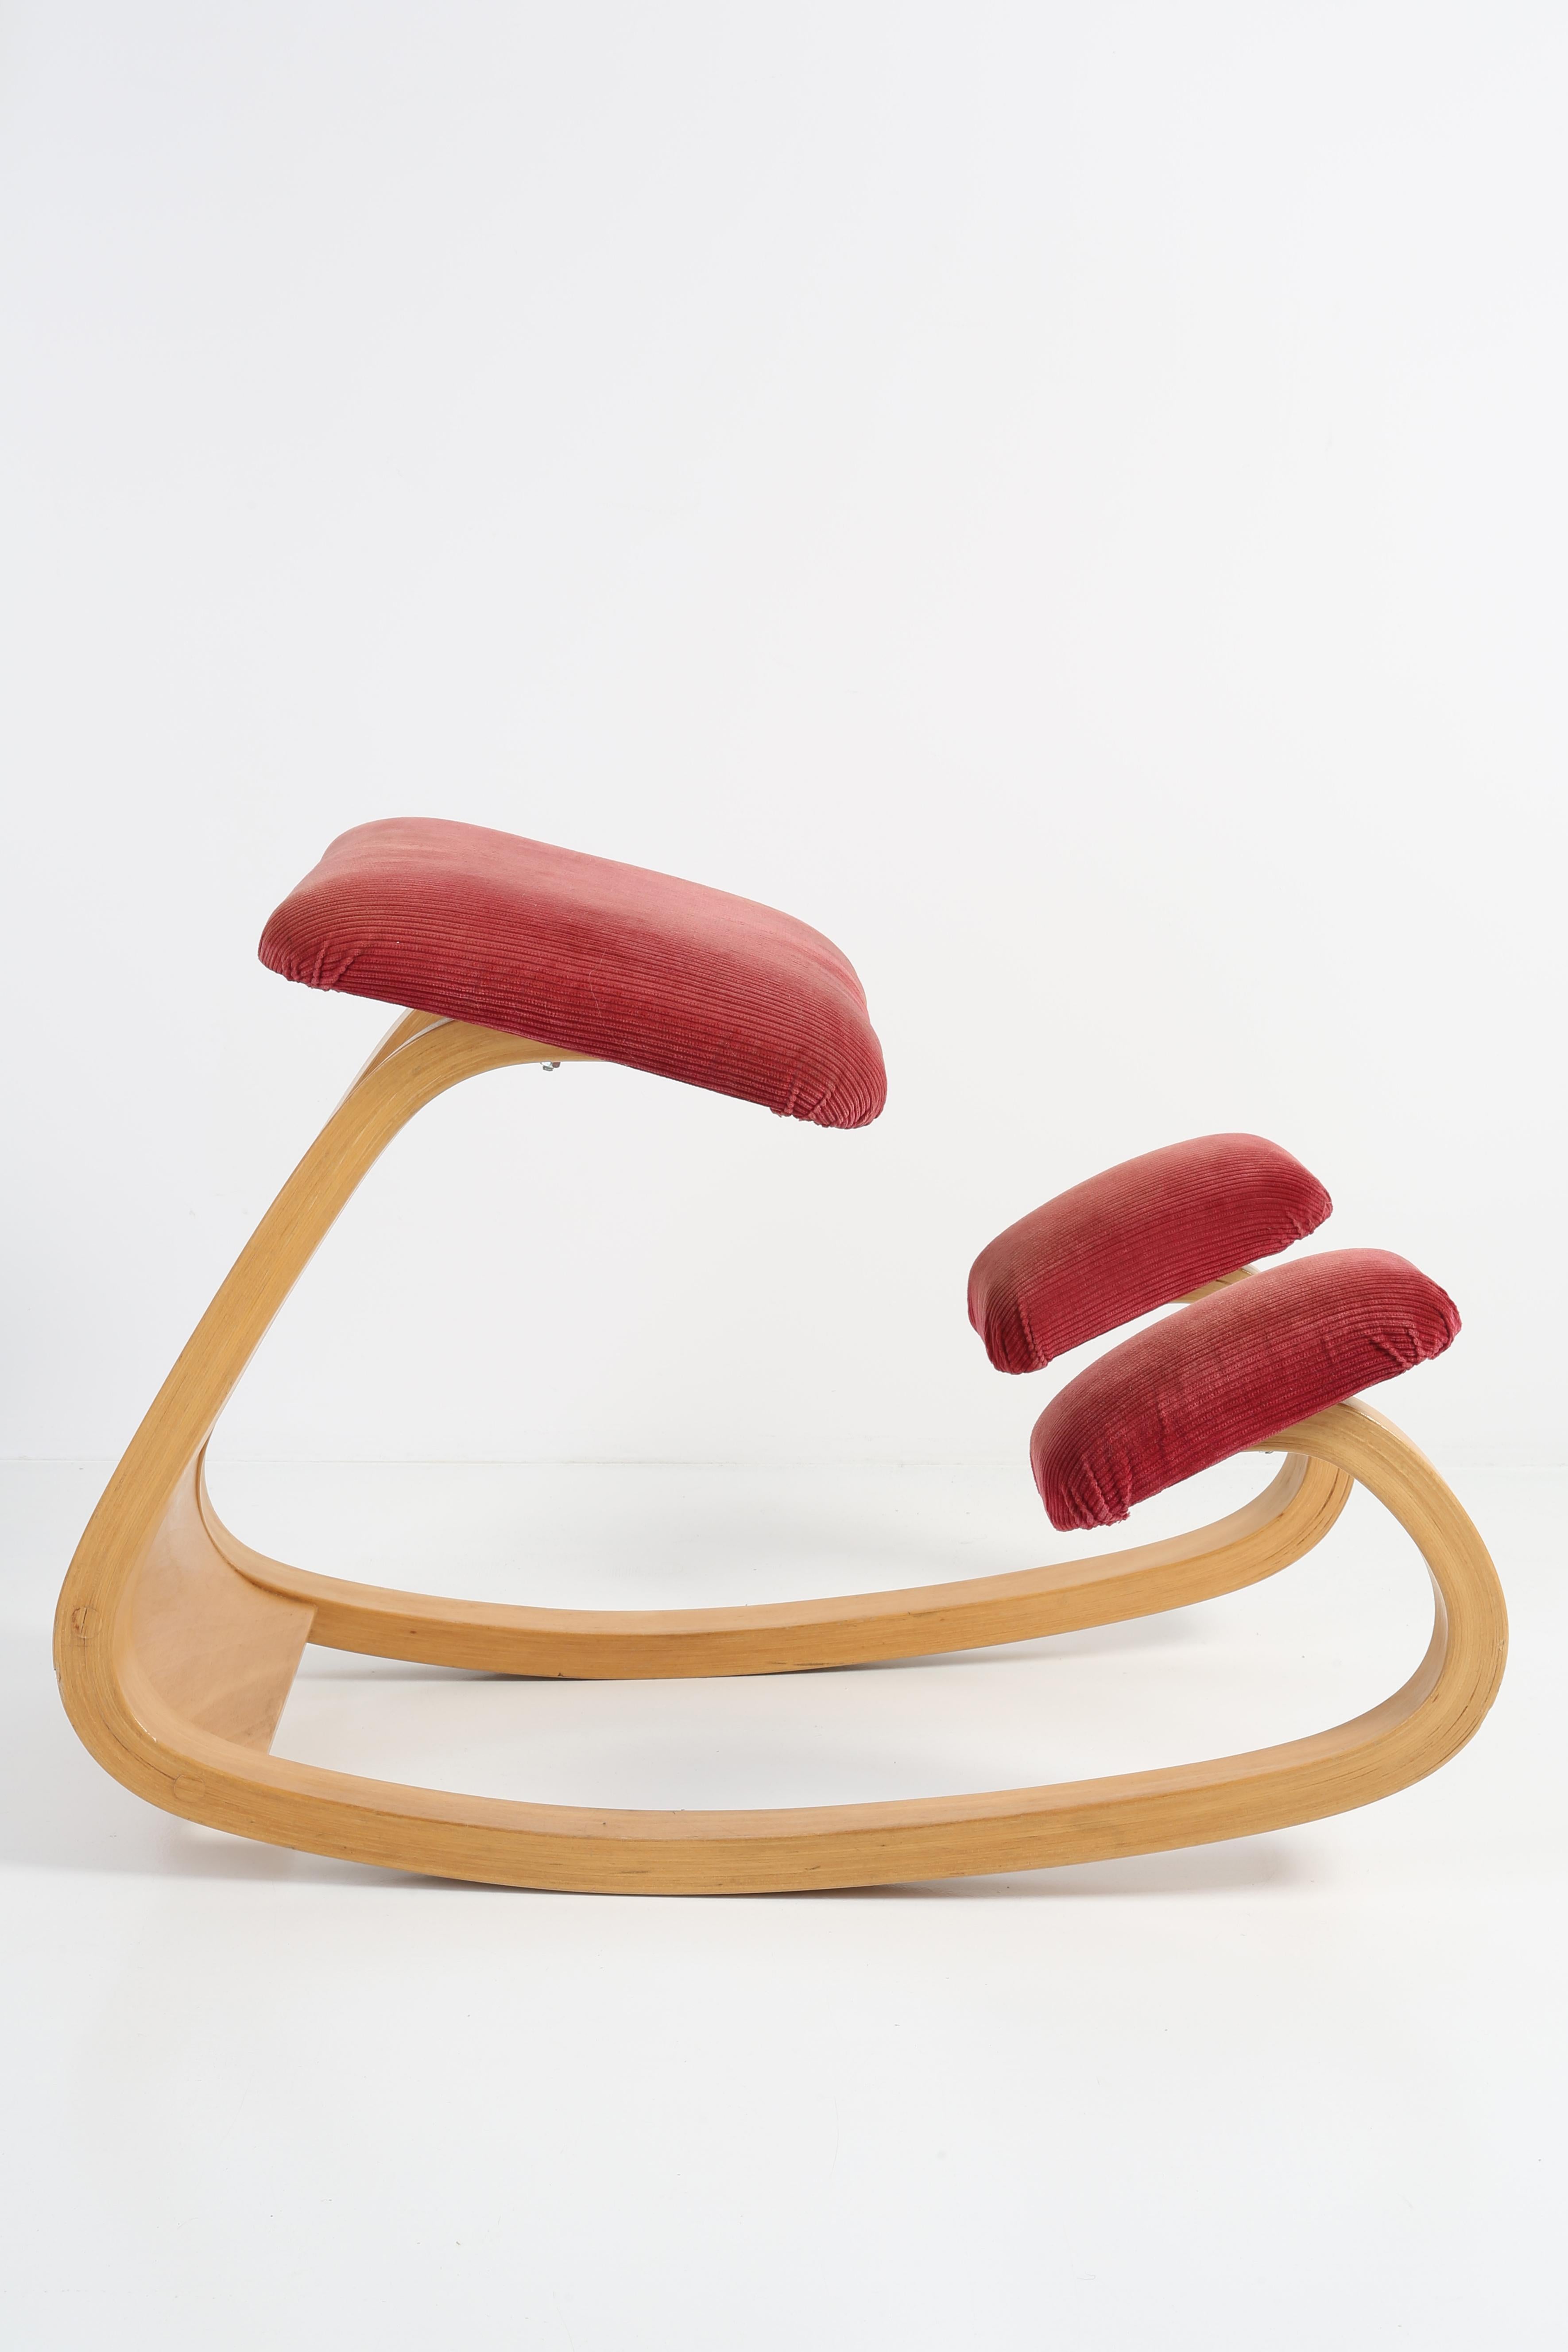 Der ikonische kniende Stuhl Variable Balans von Peter Opsvik ist sofort zu erkennen. Der Industriedesigner Peter Opsvik ist bekannt als der führende Designer für ergonomische Sitzmöbel. Der Stuhl wird auch heute noch hergestellt, aber er ist alt und